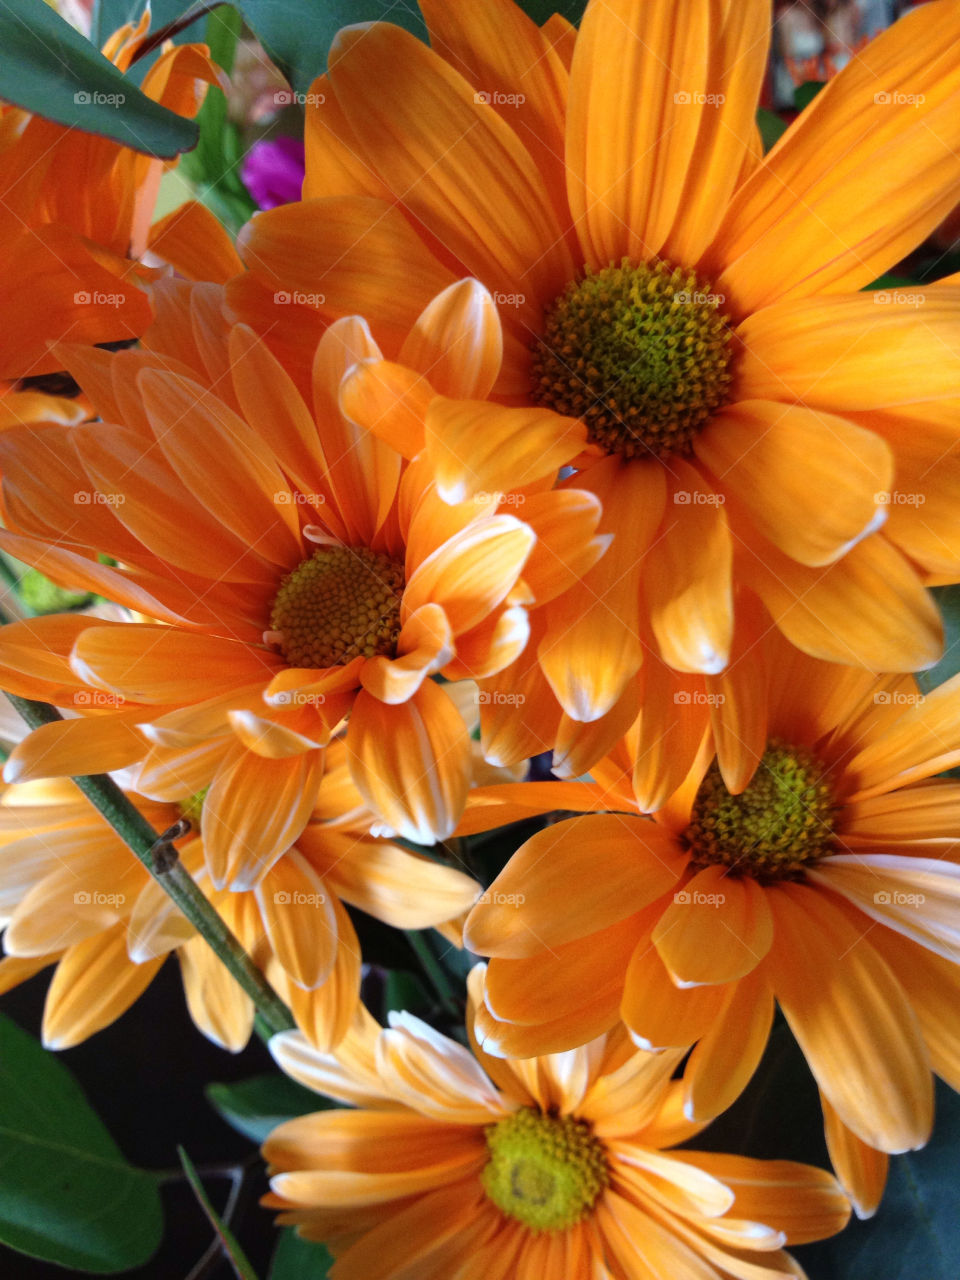 flower summer orange plant by am0508